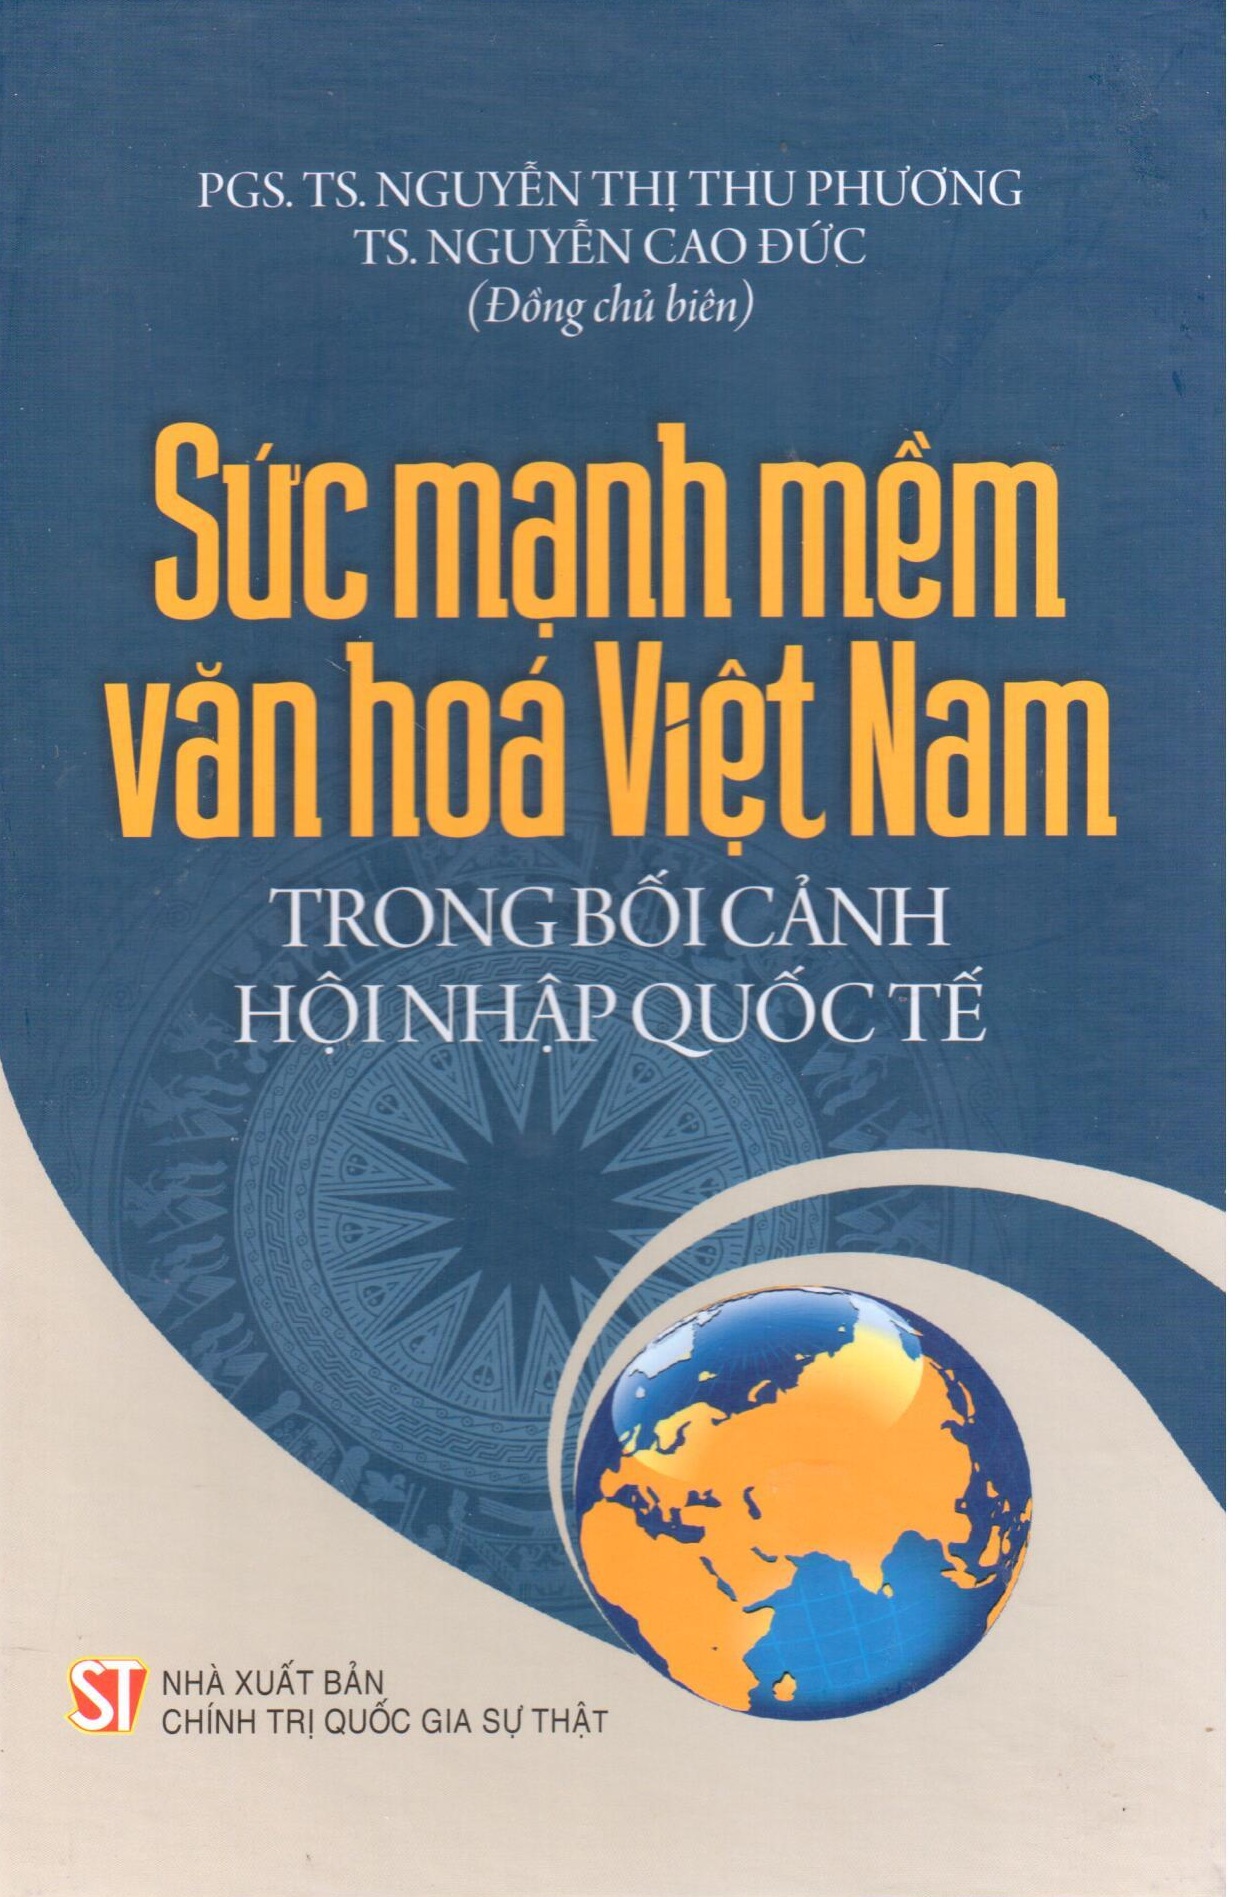 Sức mạnh mềm văn hóa Việt Nam trong bối cảnh hội nhập quốc tế